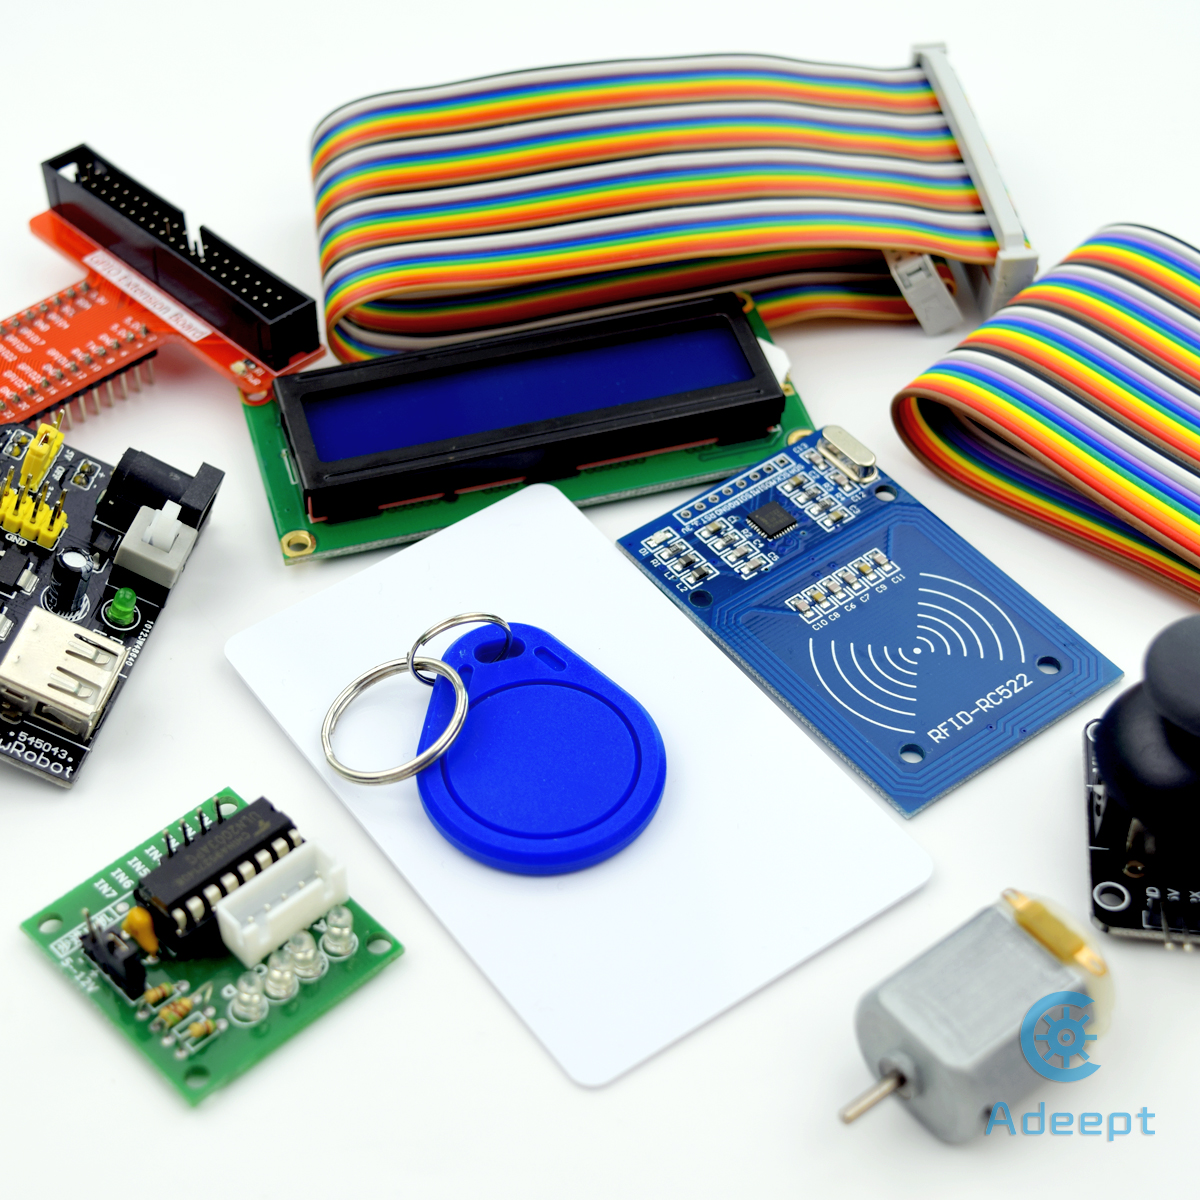 Adeept RFID Starter Kit for Raspberry Pi 3 2 Model B/B+ Python 